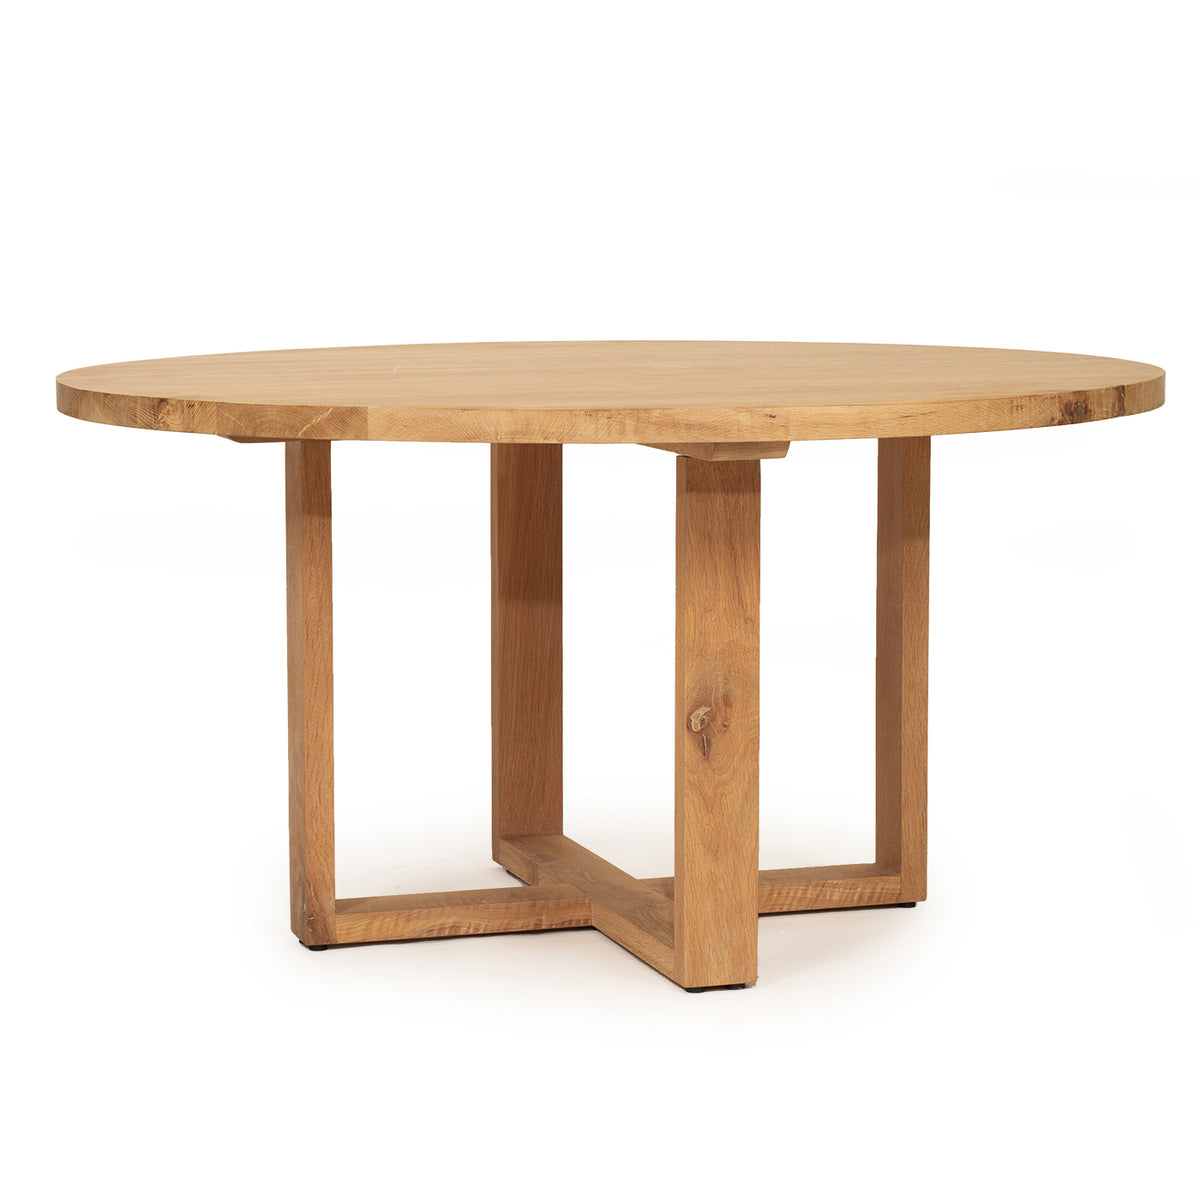 Steffan American Oak Dining Table – 120cm - Notbrand